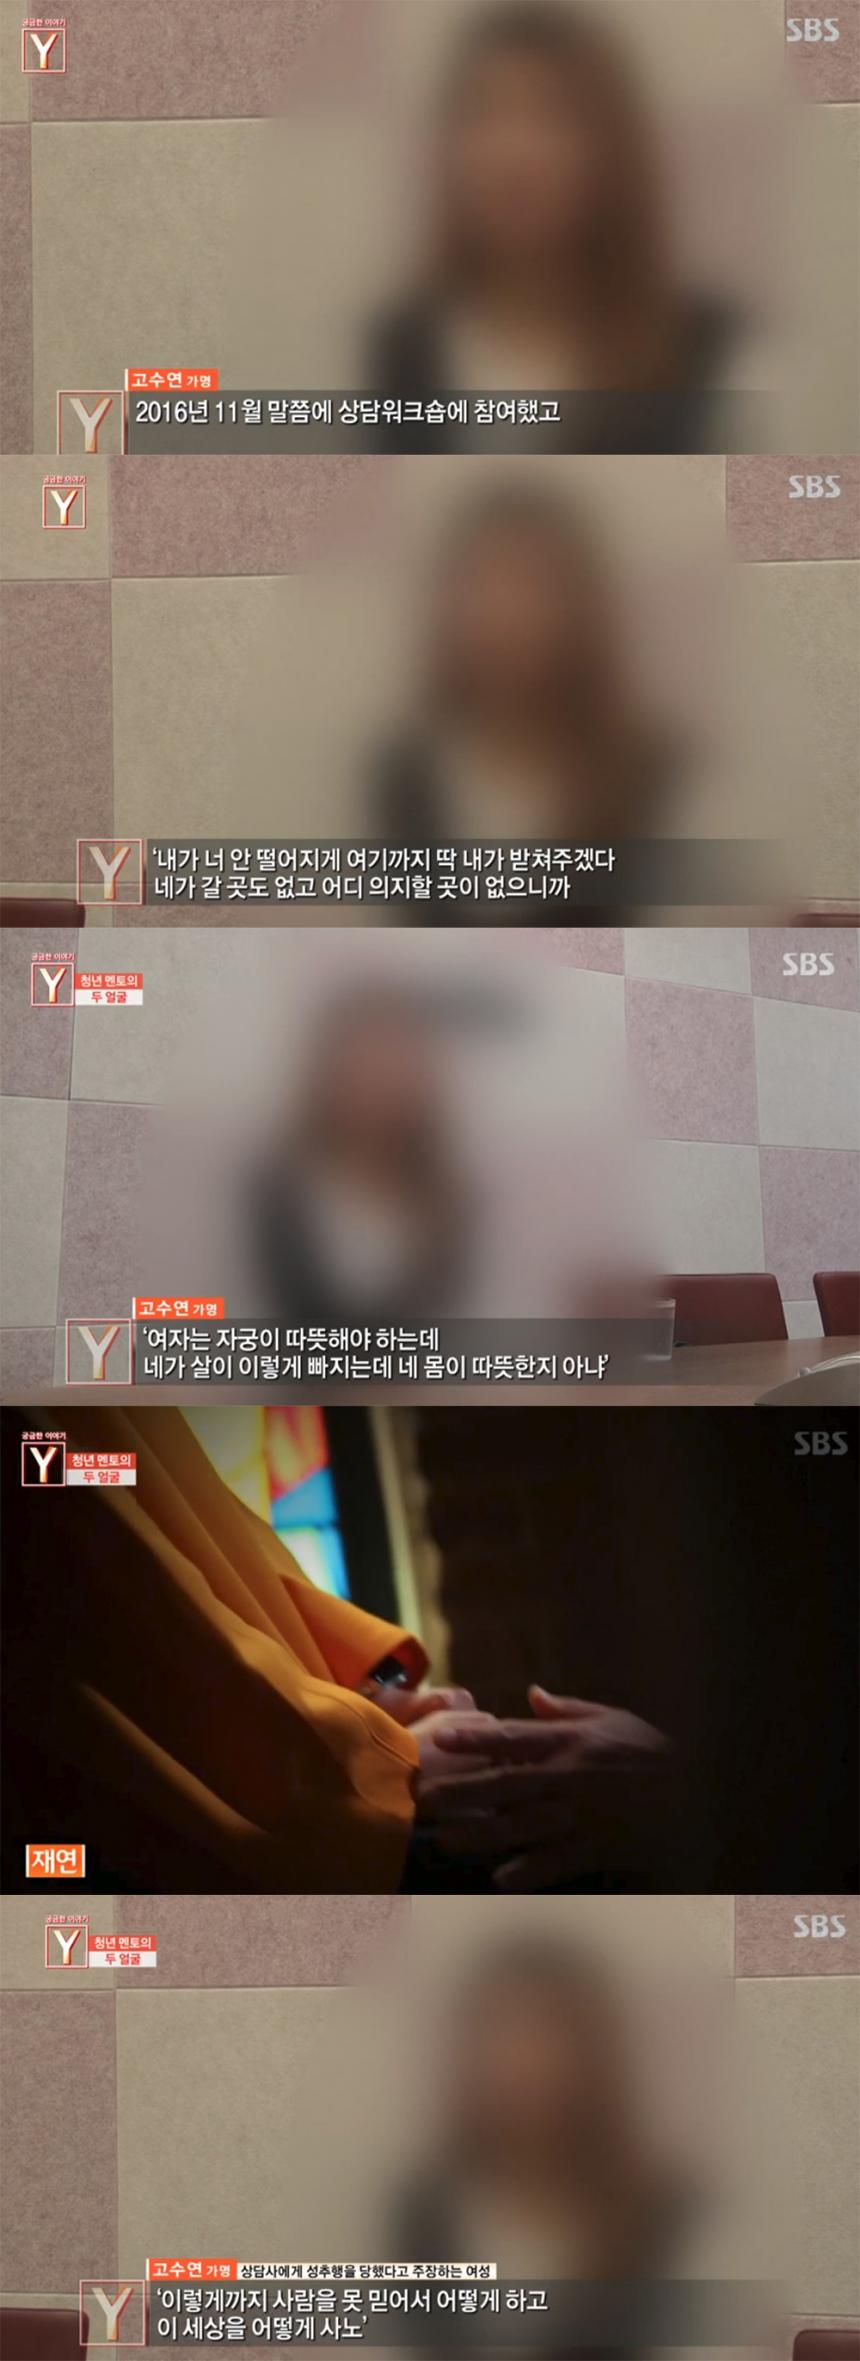 SBS ‘궁금한 이야기 Y’ 방송 캡처 